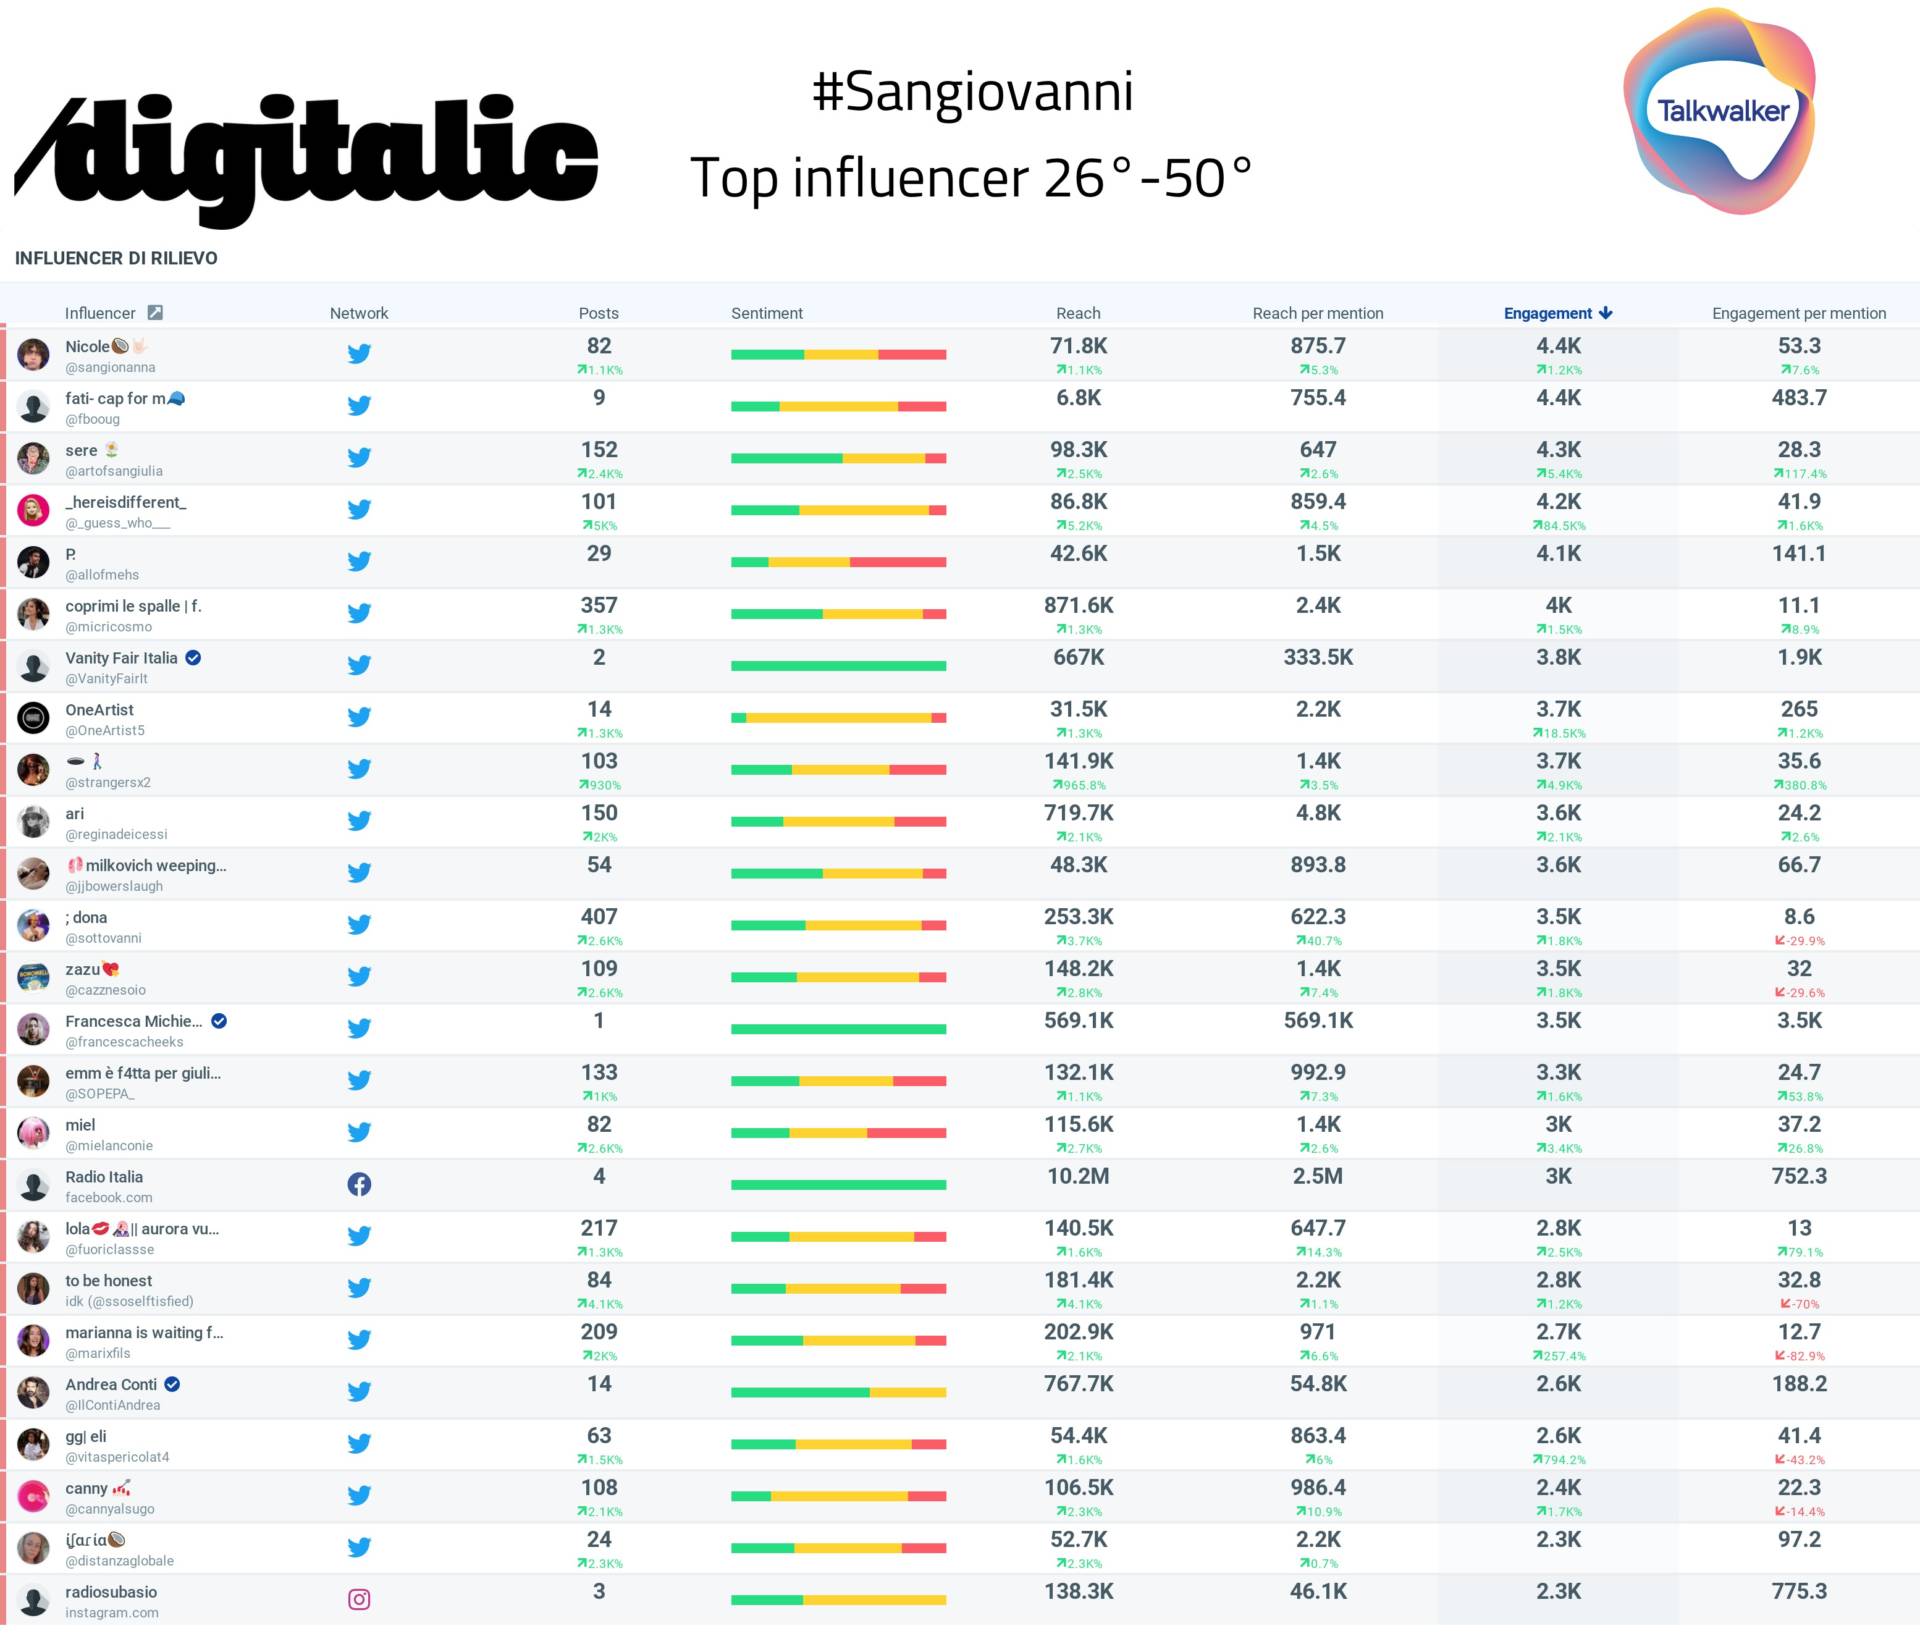 Sangiovanni, gli account più influenti dal 26° al 50° posto